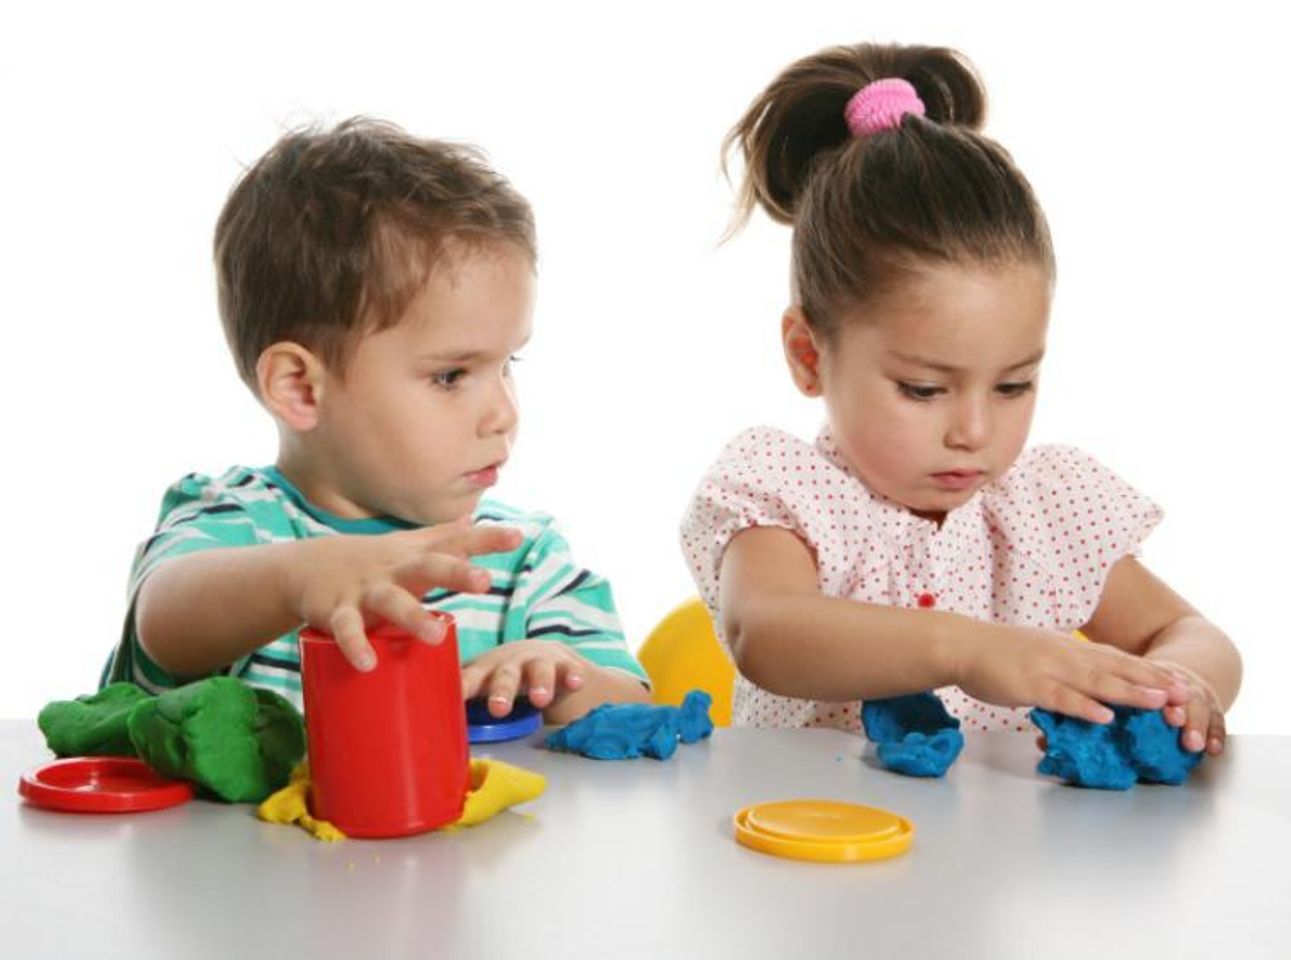 Trò chơi tập nặn giúp bé thể hiện sự sáng tạo, khéo léo, đức tính kiên trì và gắn kết khi chơi cùng bạn bè, bố mẹ